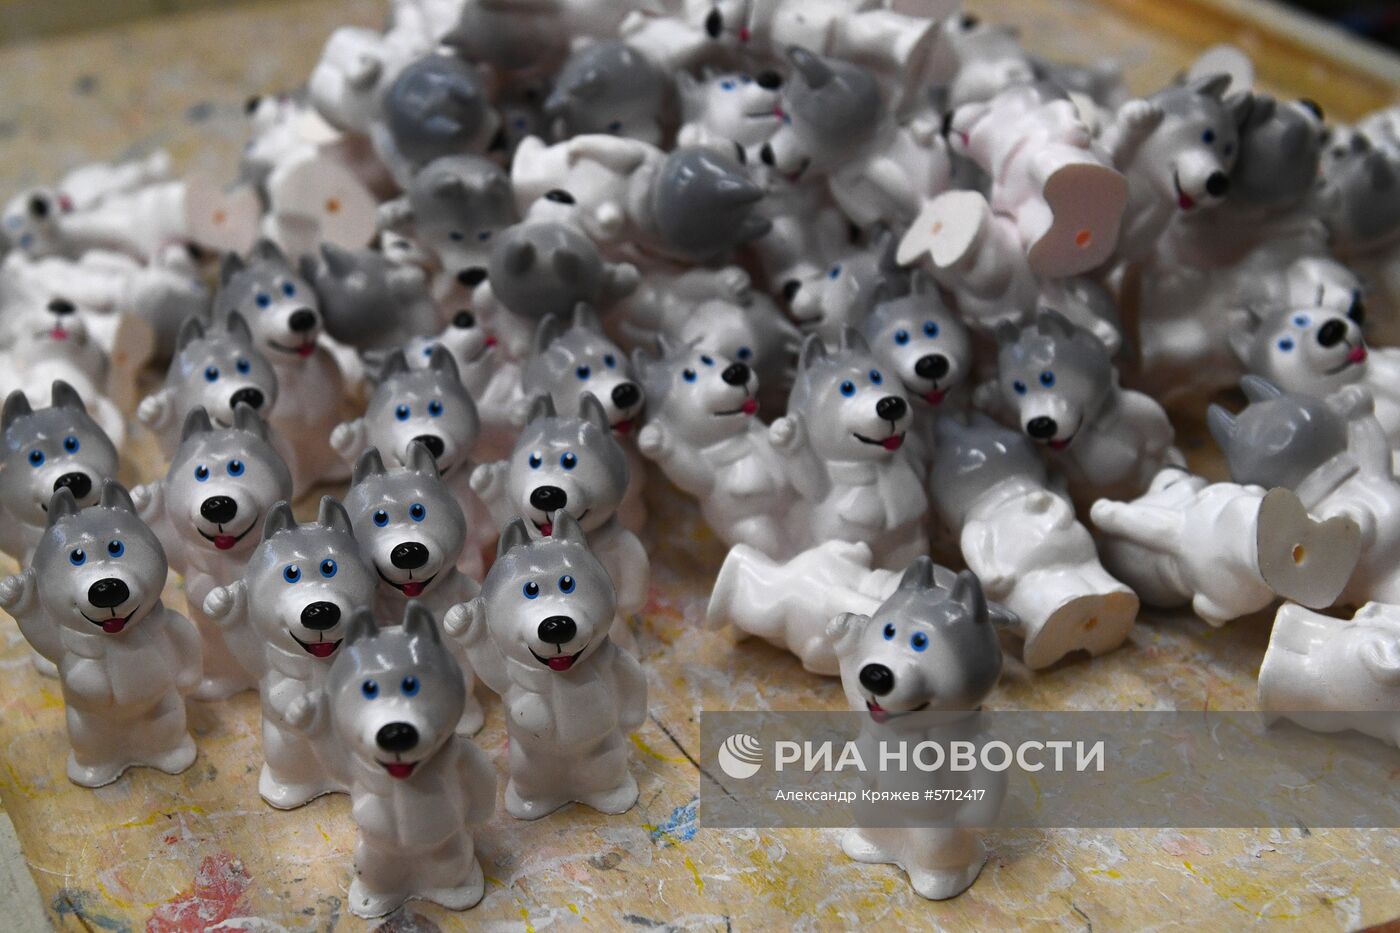 Фабрика игрушек "Бирюсинка" в Красноярске